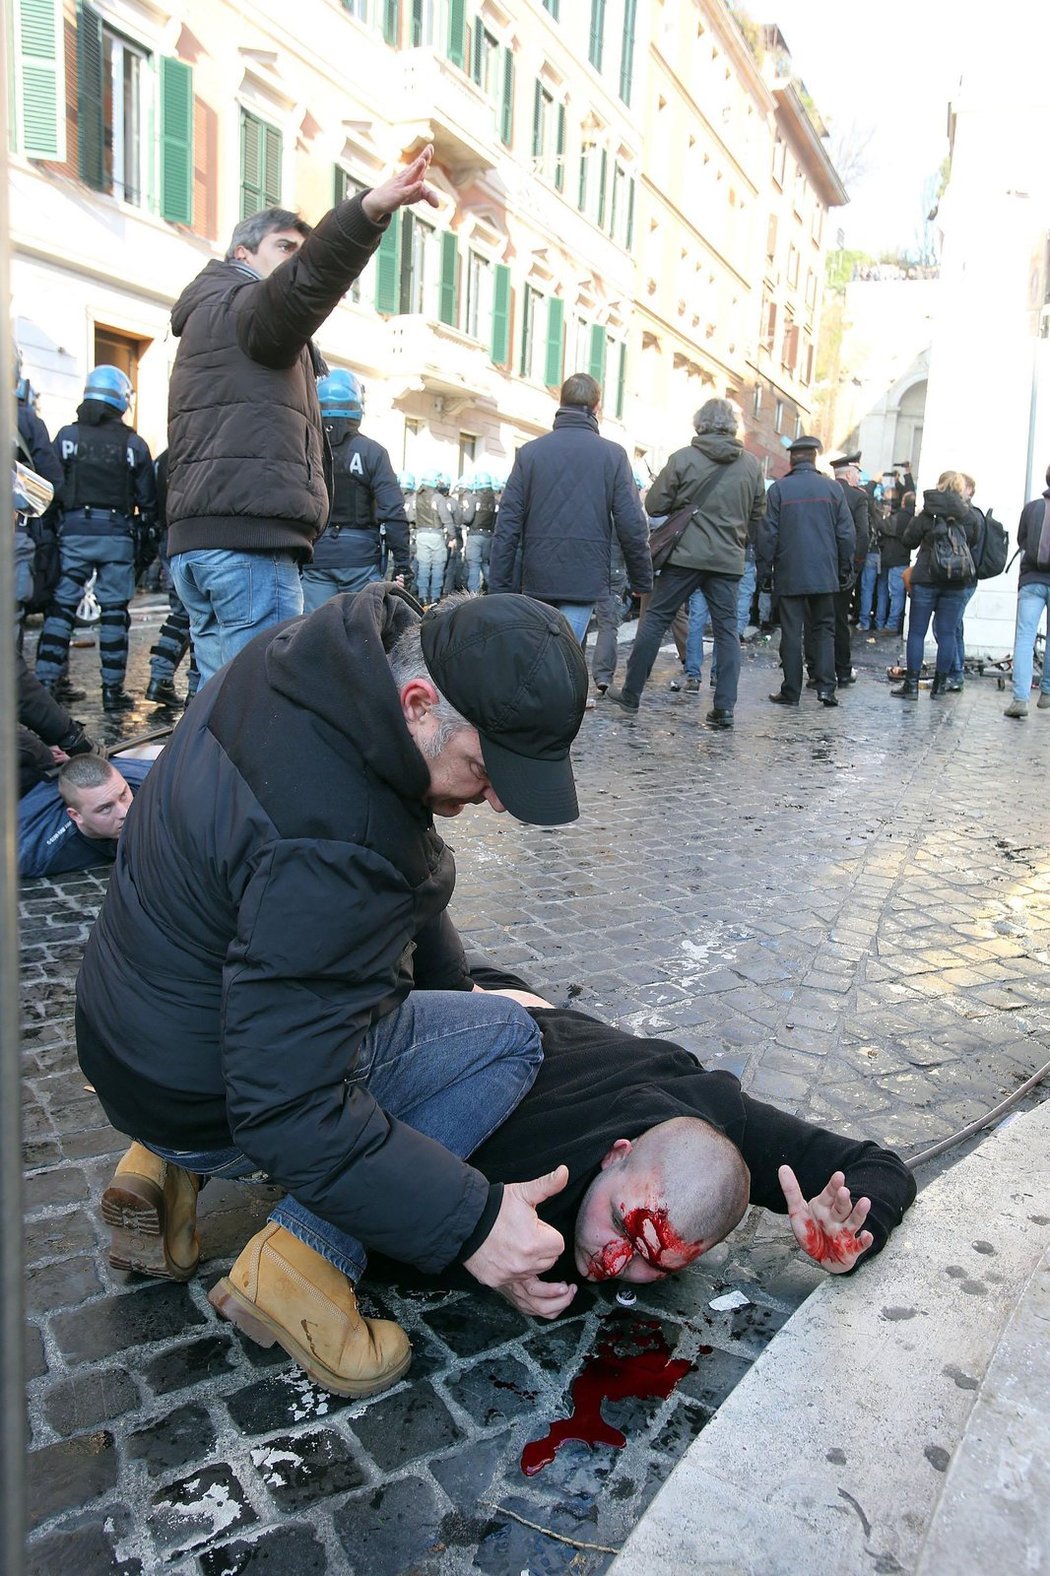 Krvavou předehru mělo utkání Evropské ligy mezi AS Řím a Feyenoordem Rotterdam. Zasahovala policie a tekla krev.